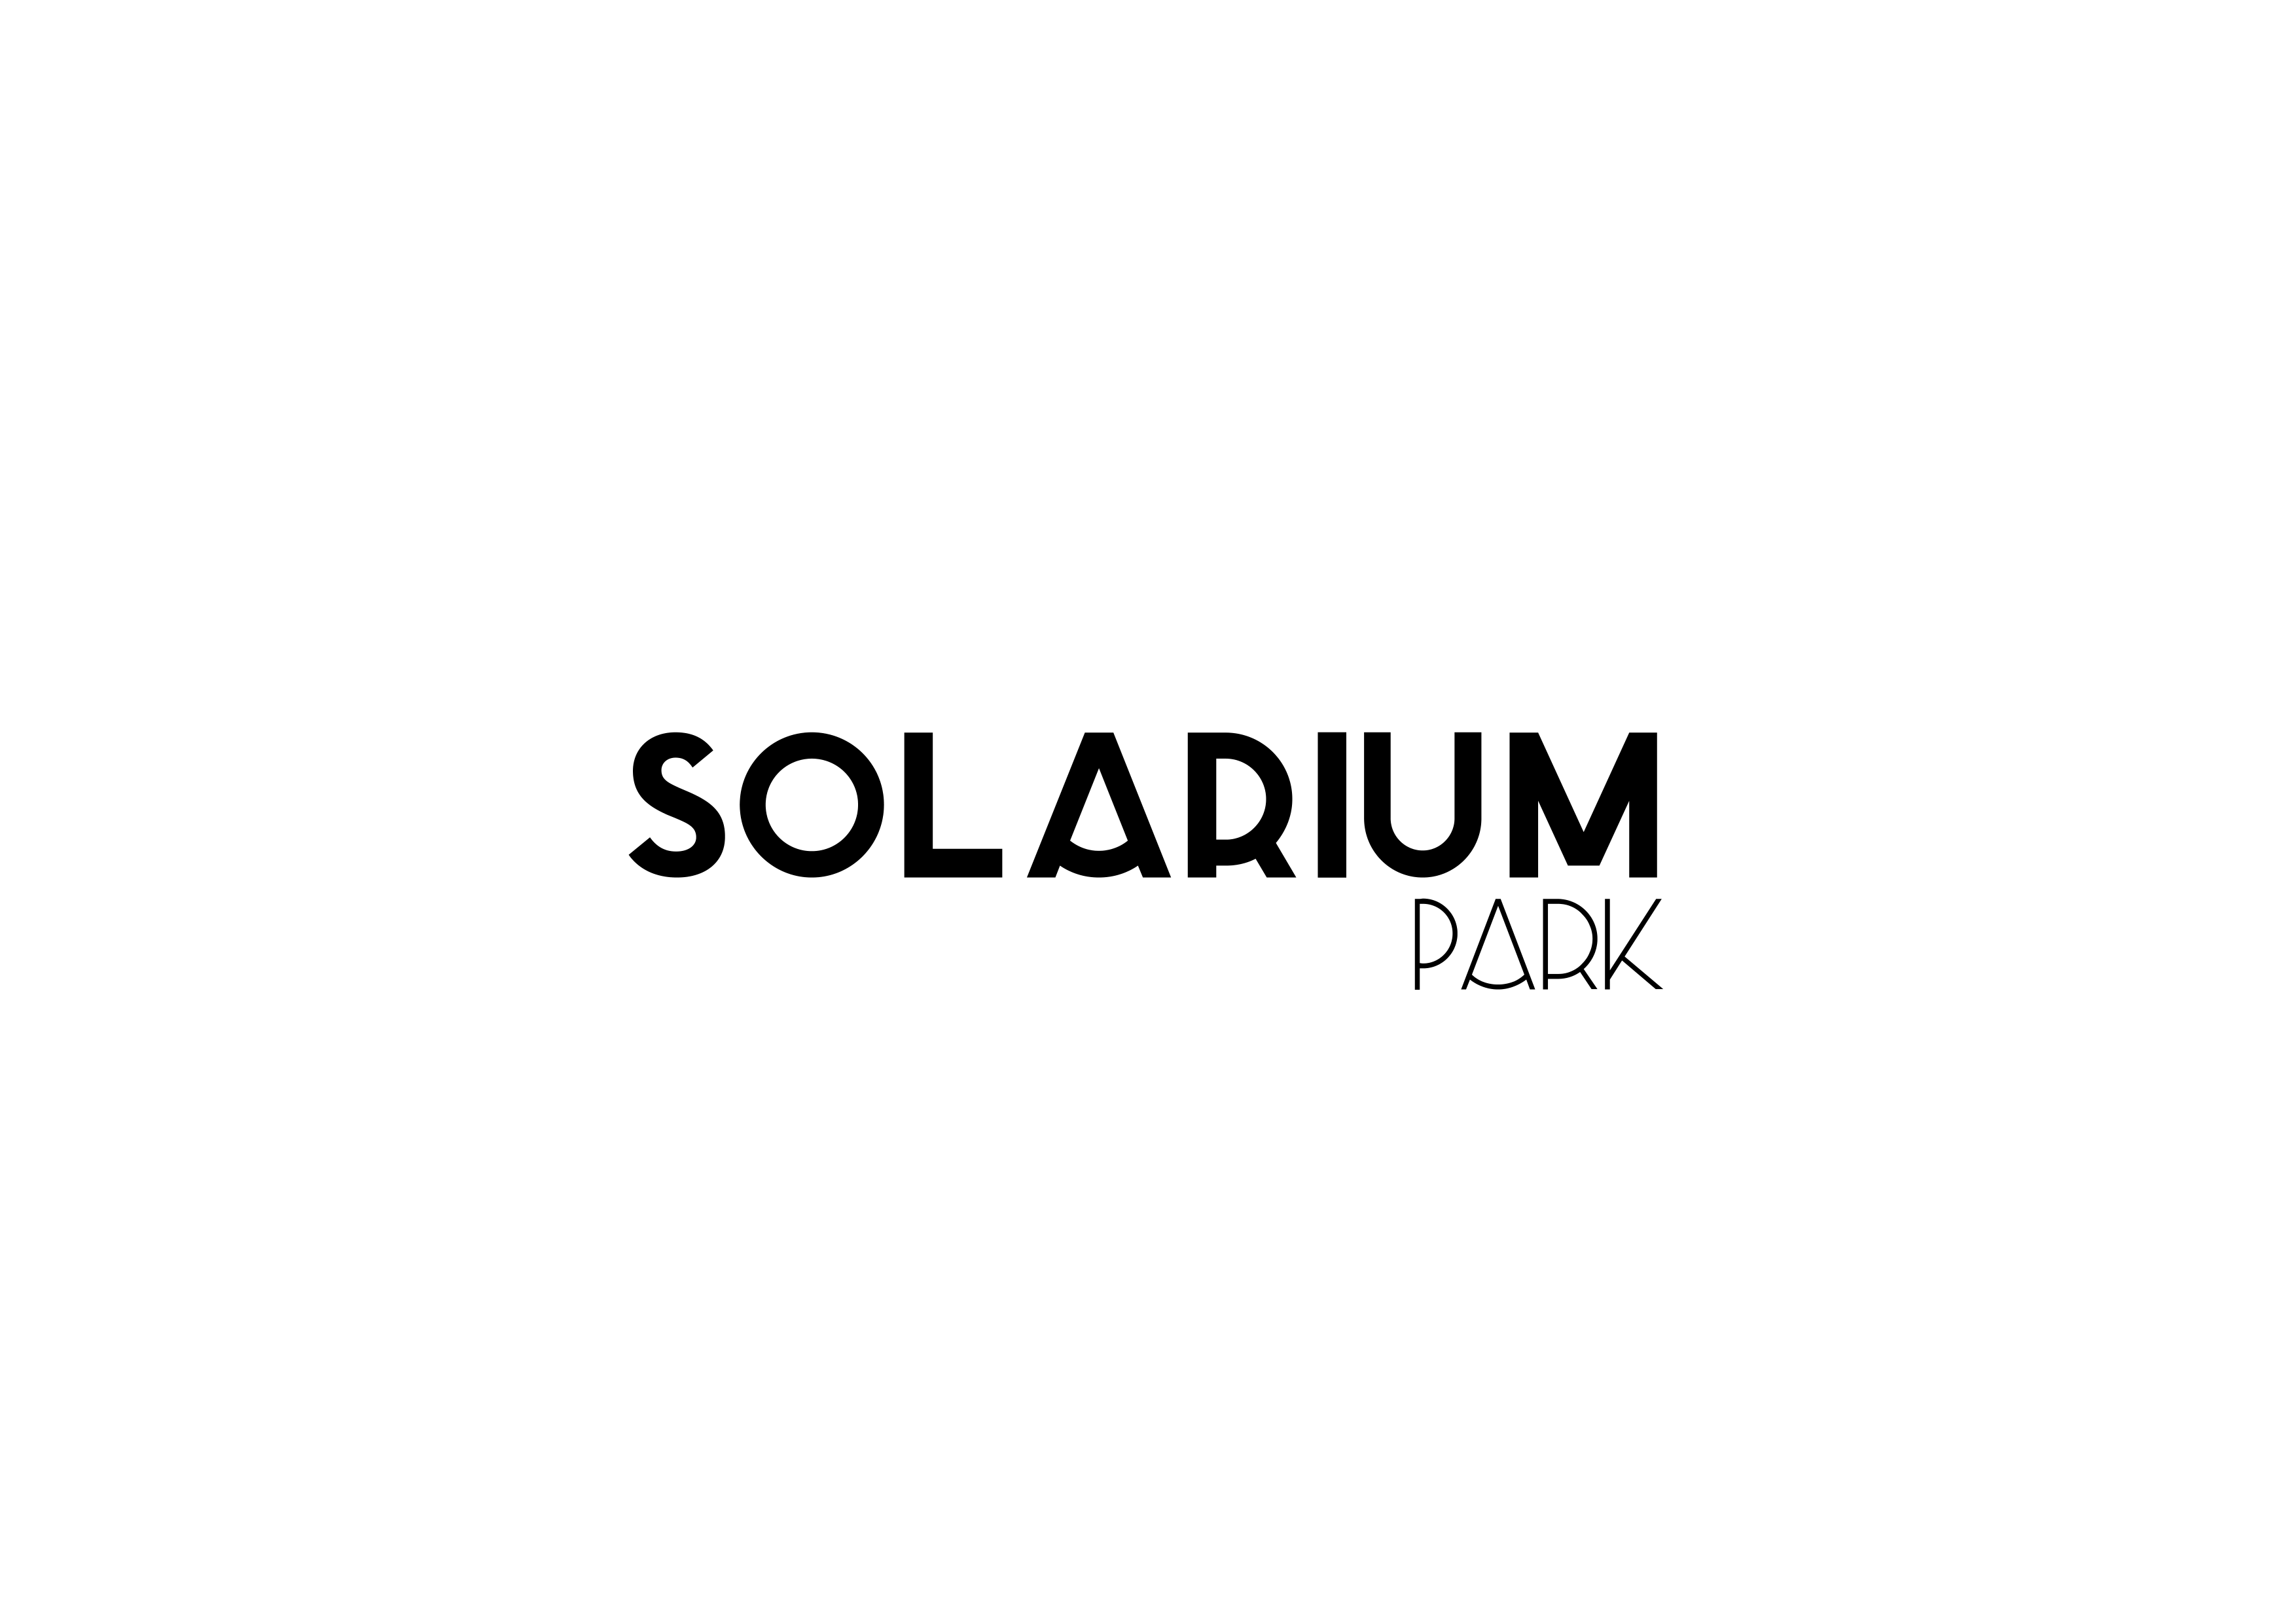 Solarium Park